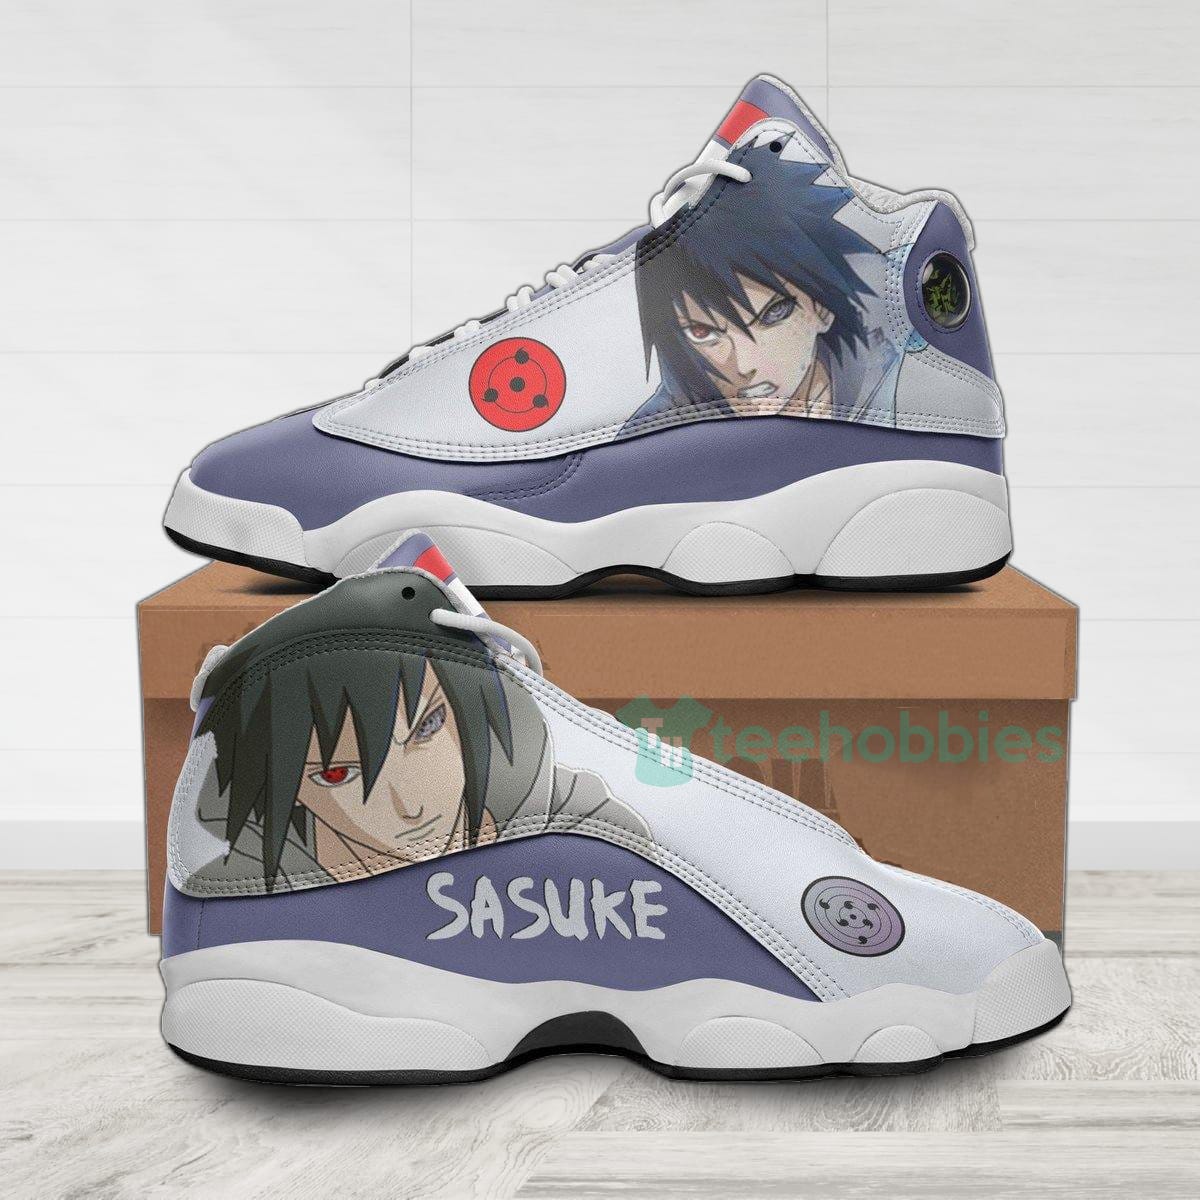 Sasuke Custom Nrt Anime Air Jordan 13 Shoes